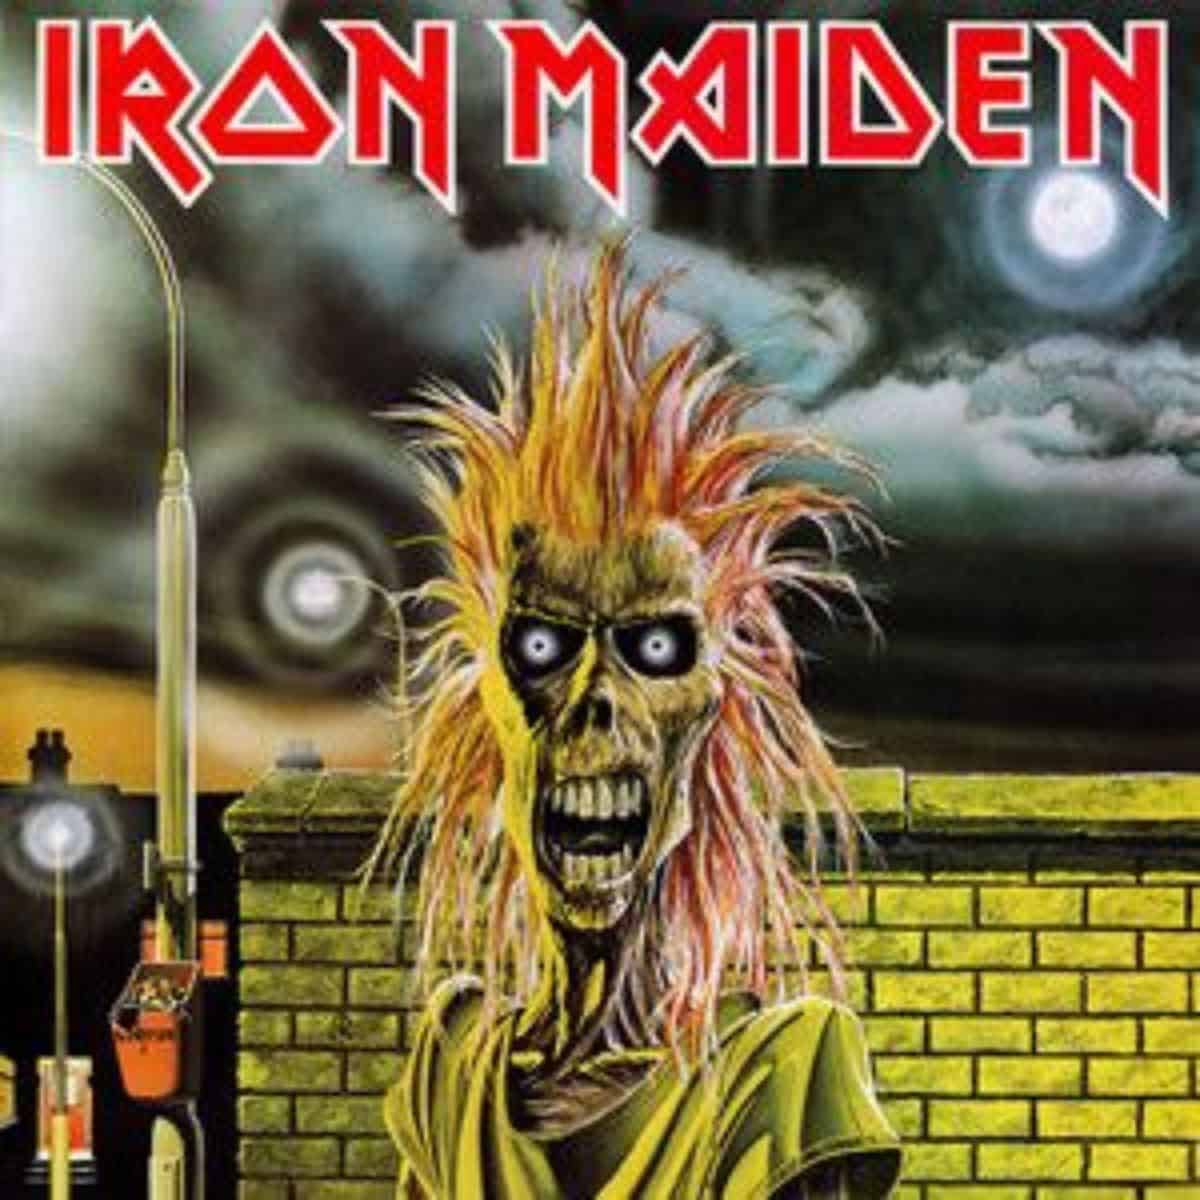 Iron maiden album cover